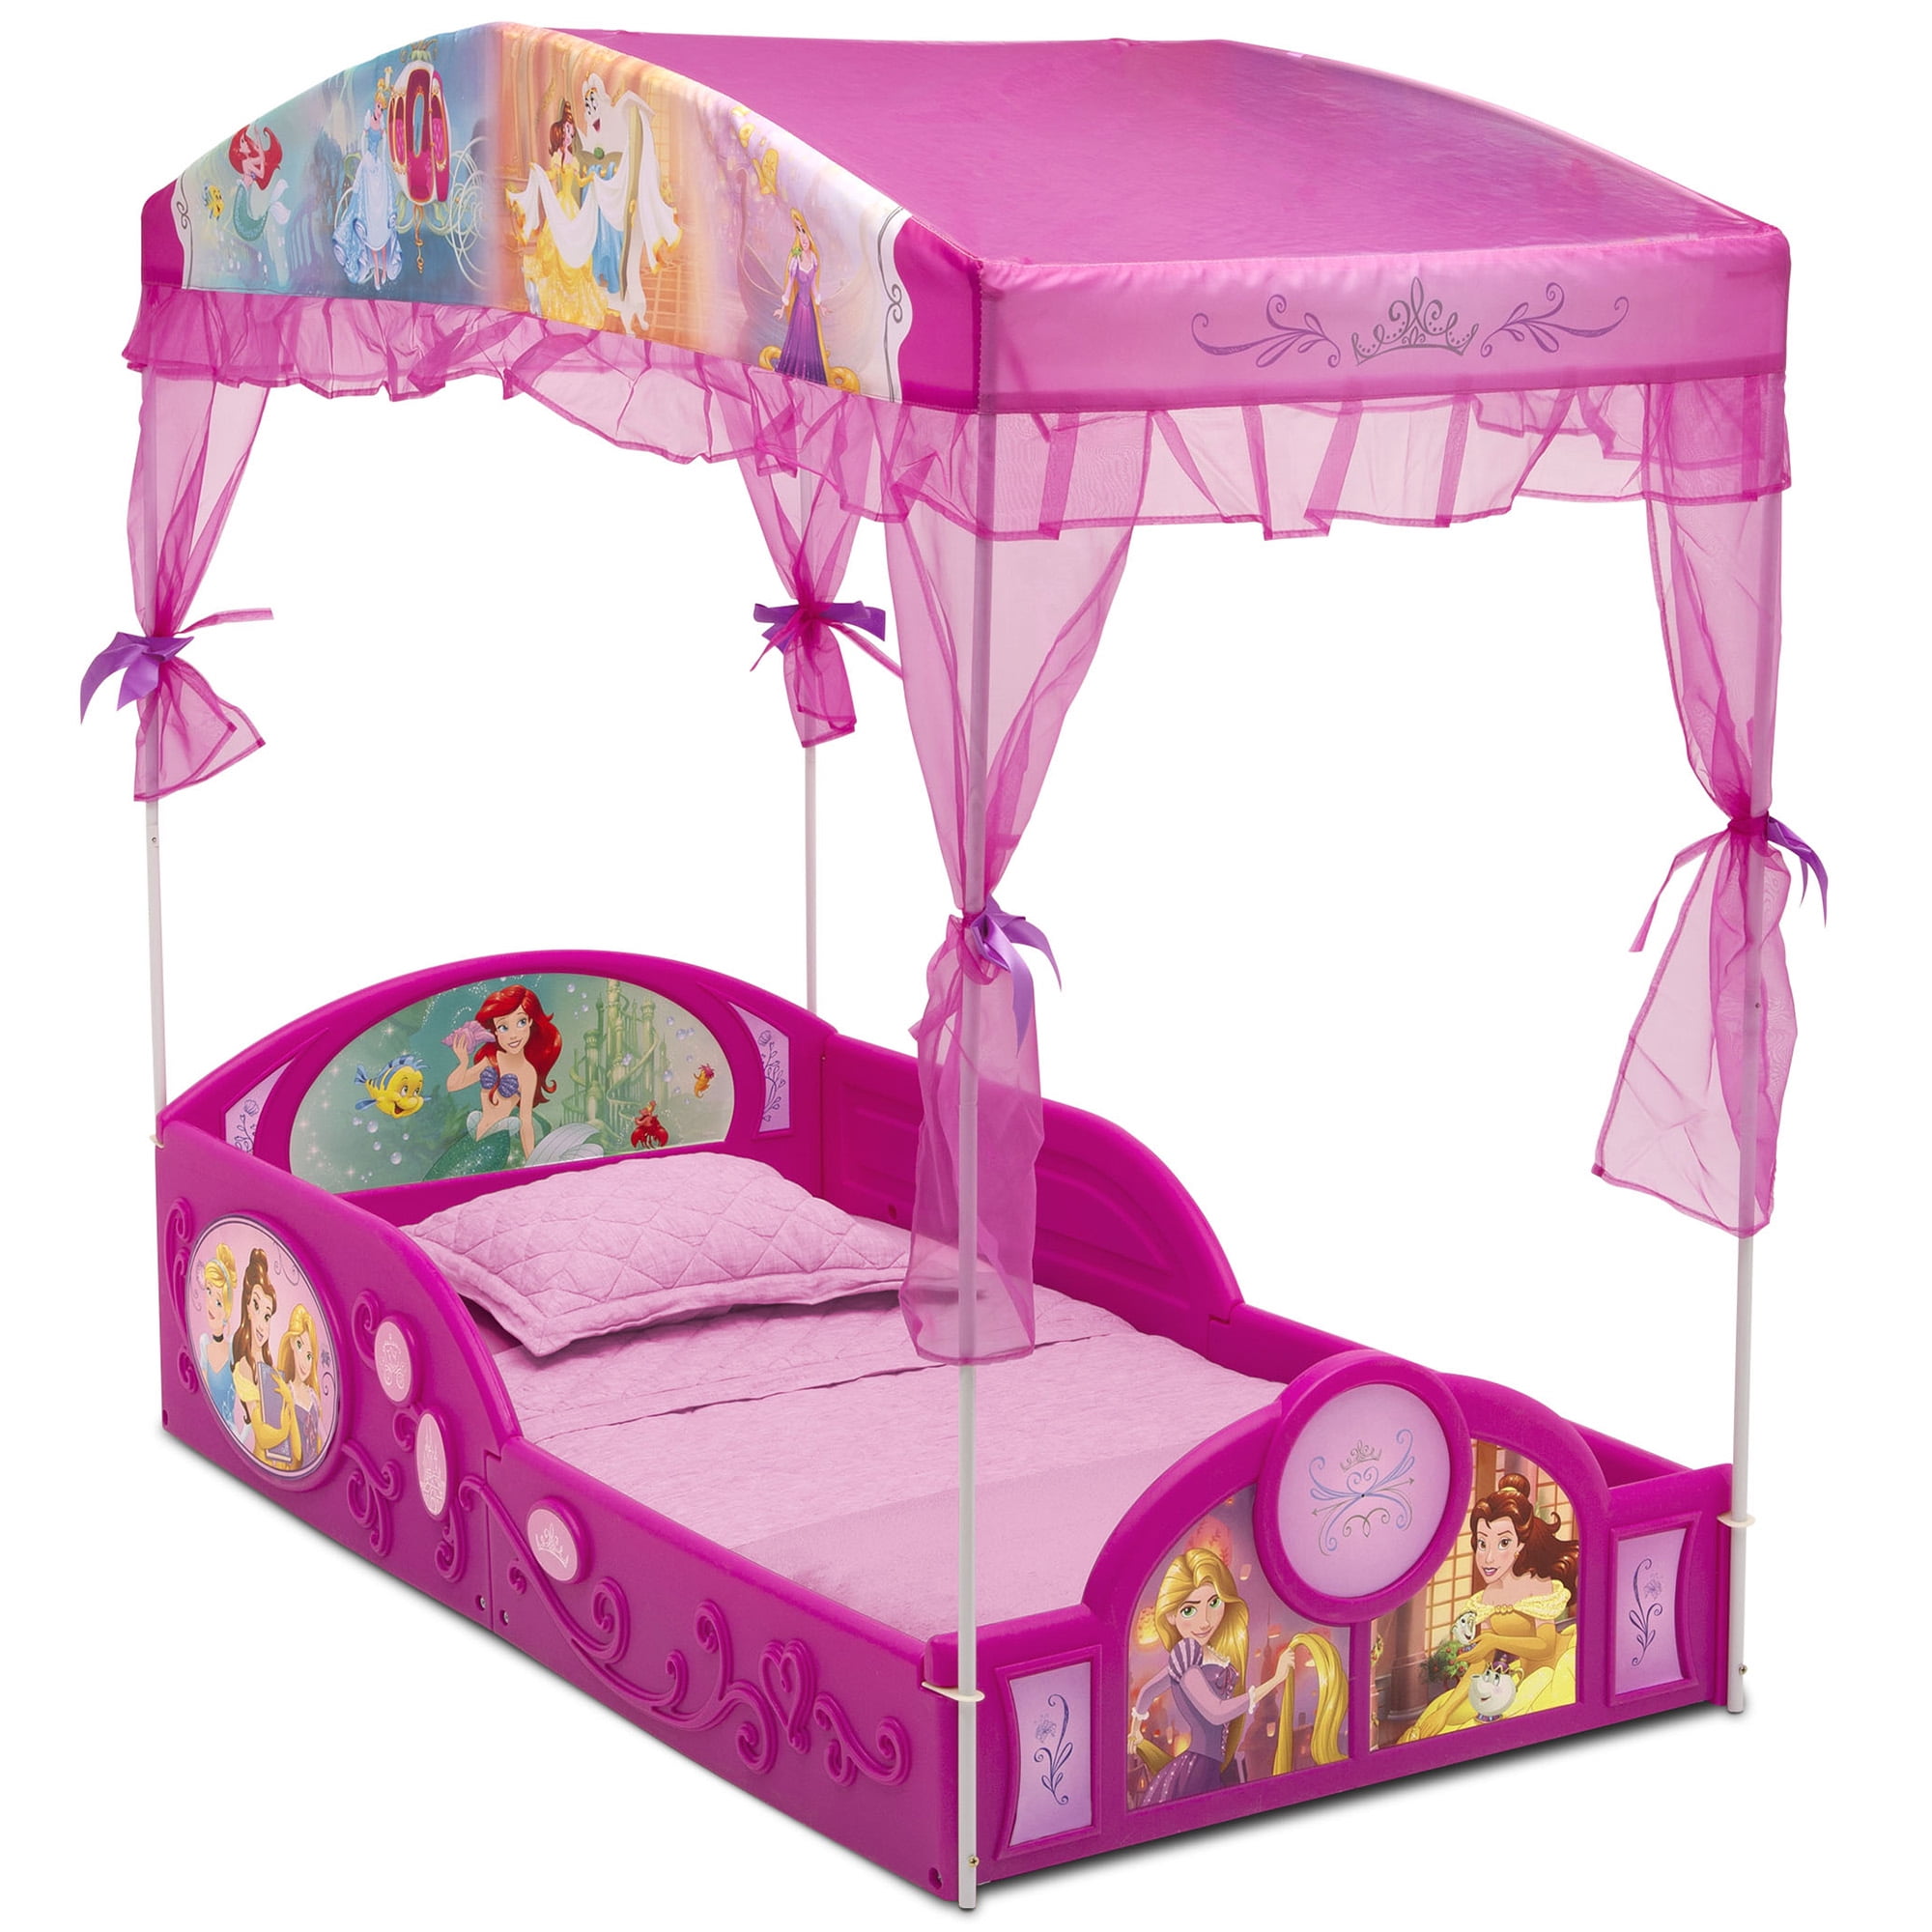 Toddler Bed Kid Frame Child Bedroom Furniture Boy Girl Princess Disney Safety 